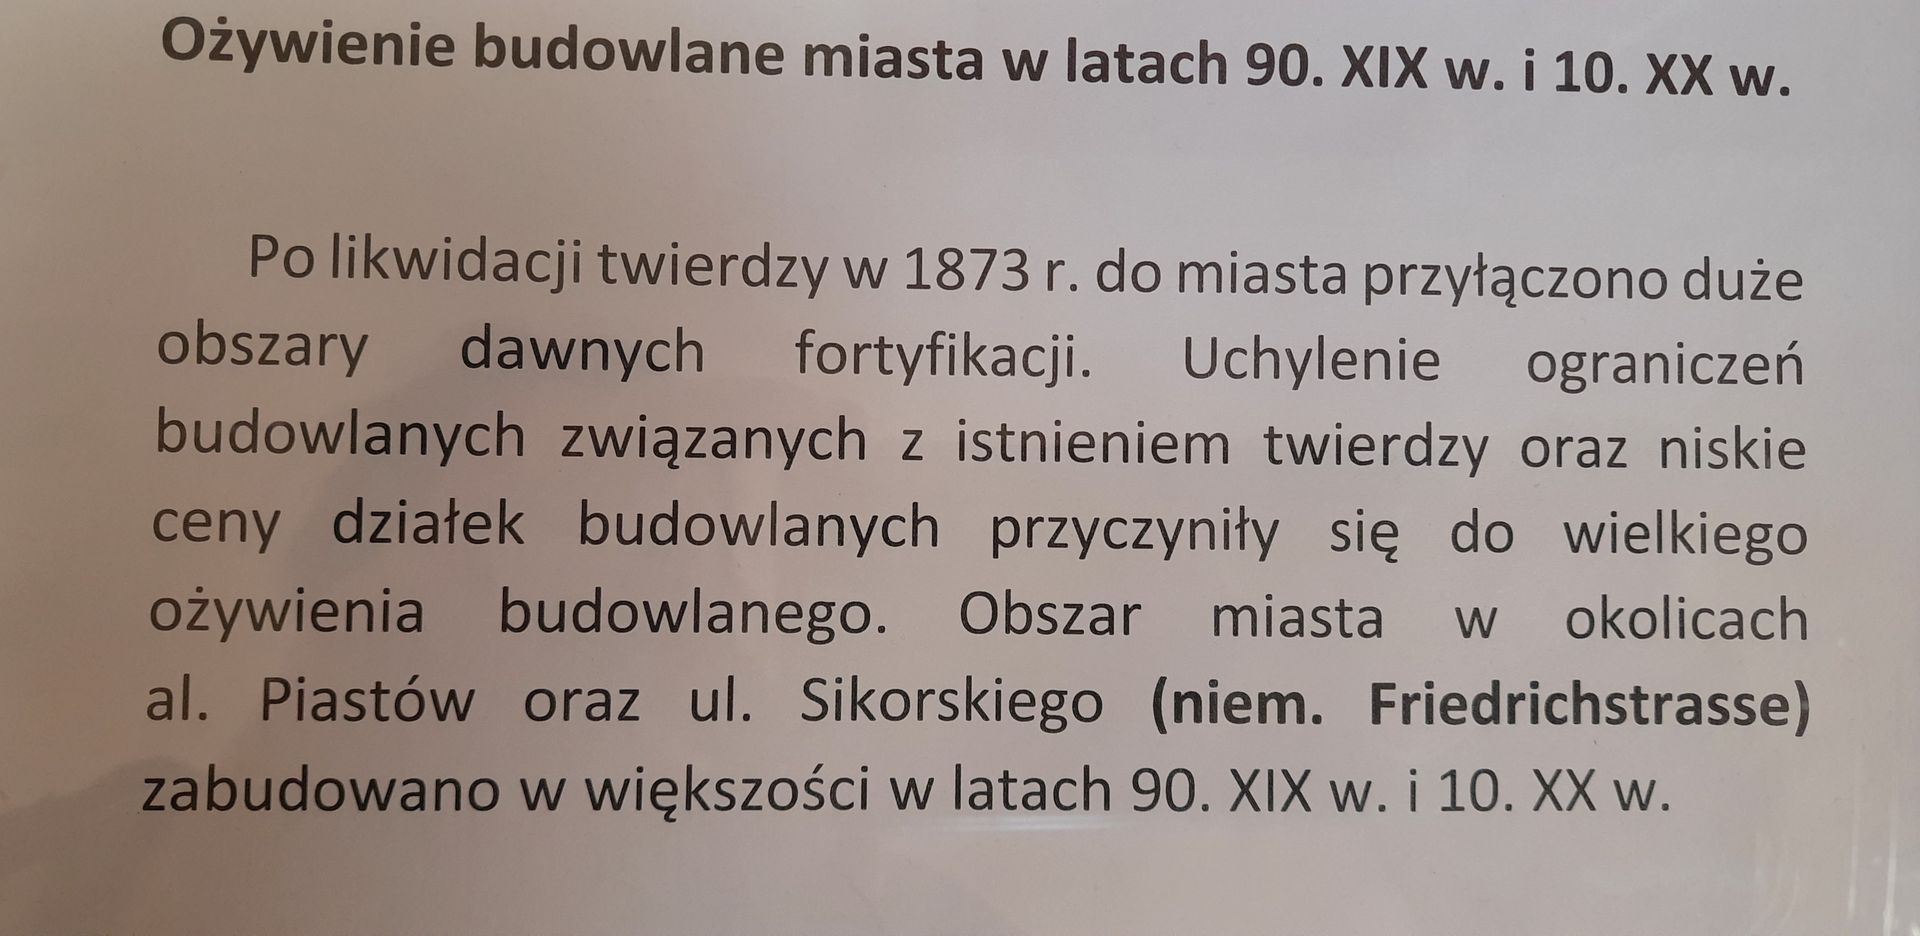 Informacje na temat ożywienia budowlanego w Szczecinie w latach 90. XIX w. i 10. XX w.